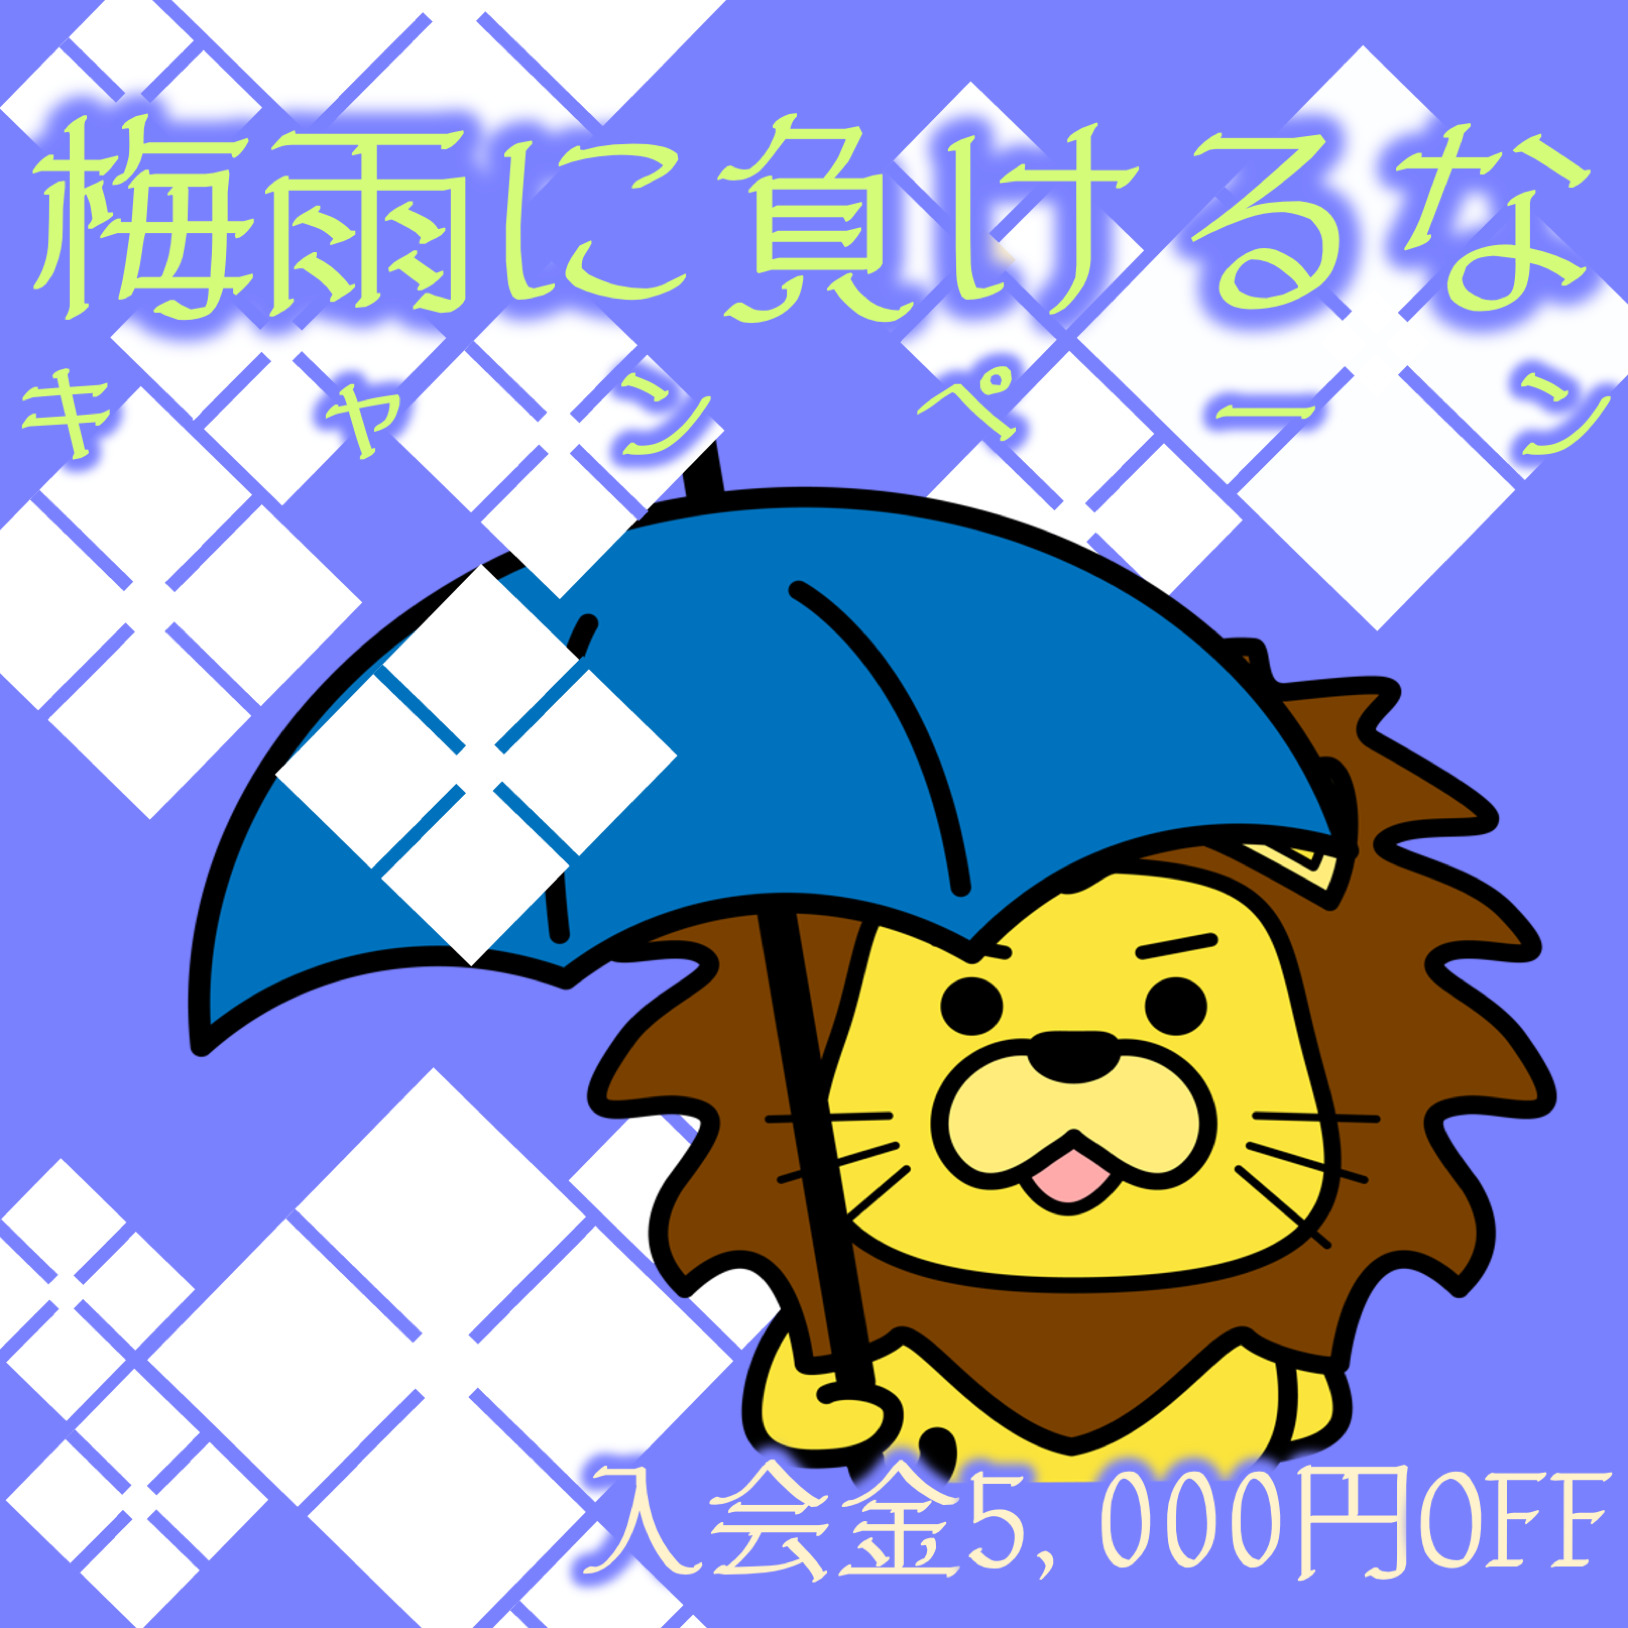 【6月】梅雨に負けるなキャンペーン